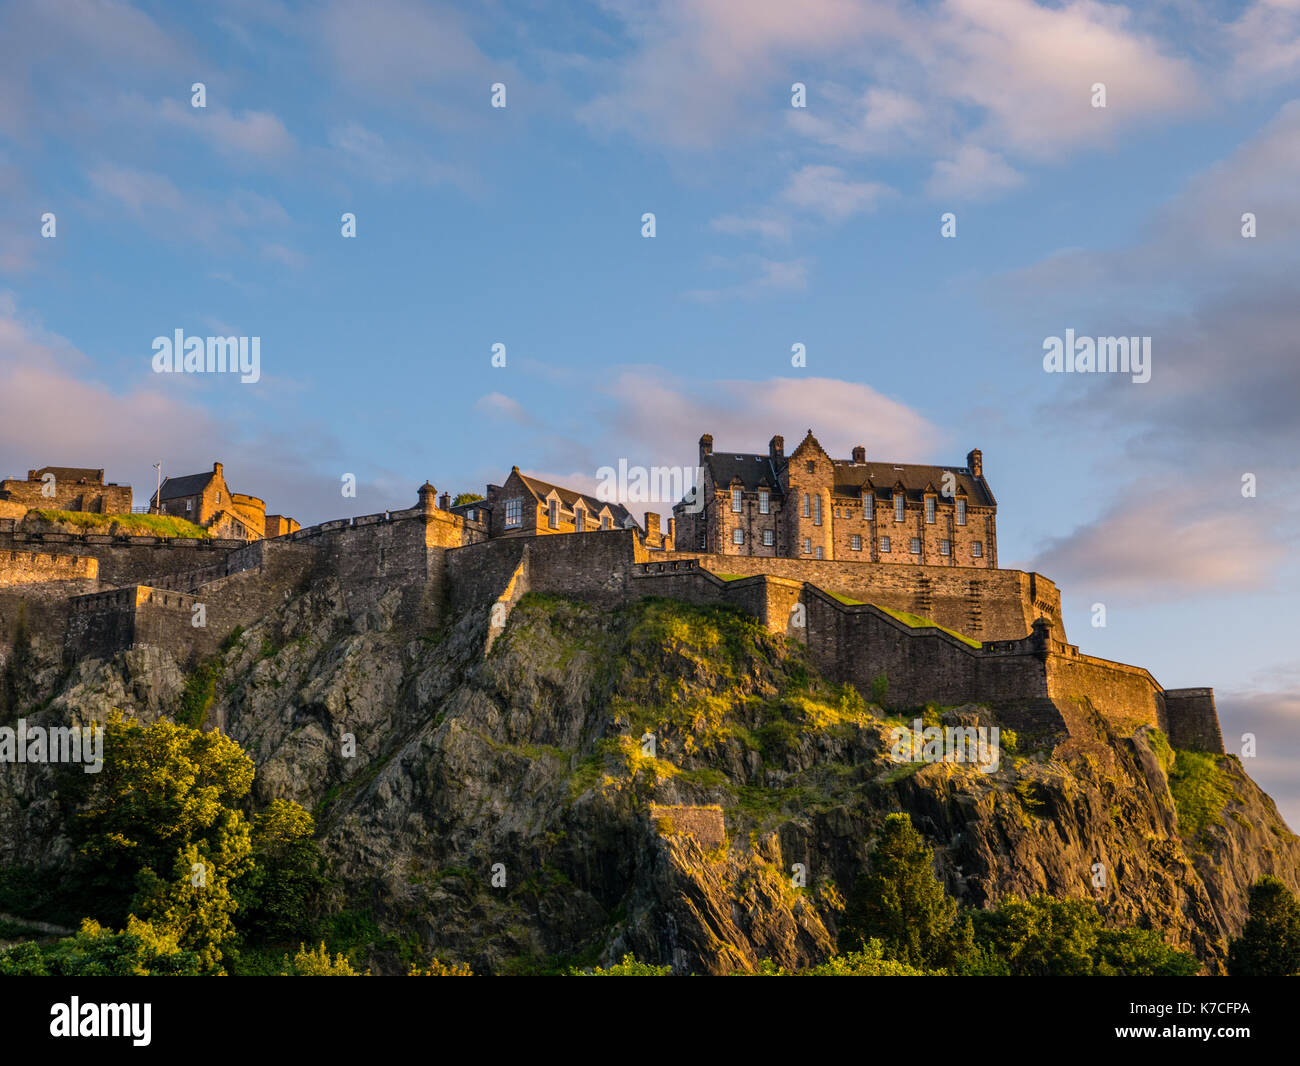 Sonnenuntergang, Edinburgh Castle, gesehen von der Princes Street Gardens und Edinburgh Castle, Castle Rock, Edinburgh, Schottland. UK, GB. Stockfoto